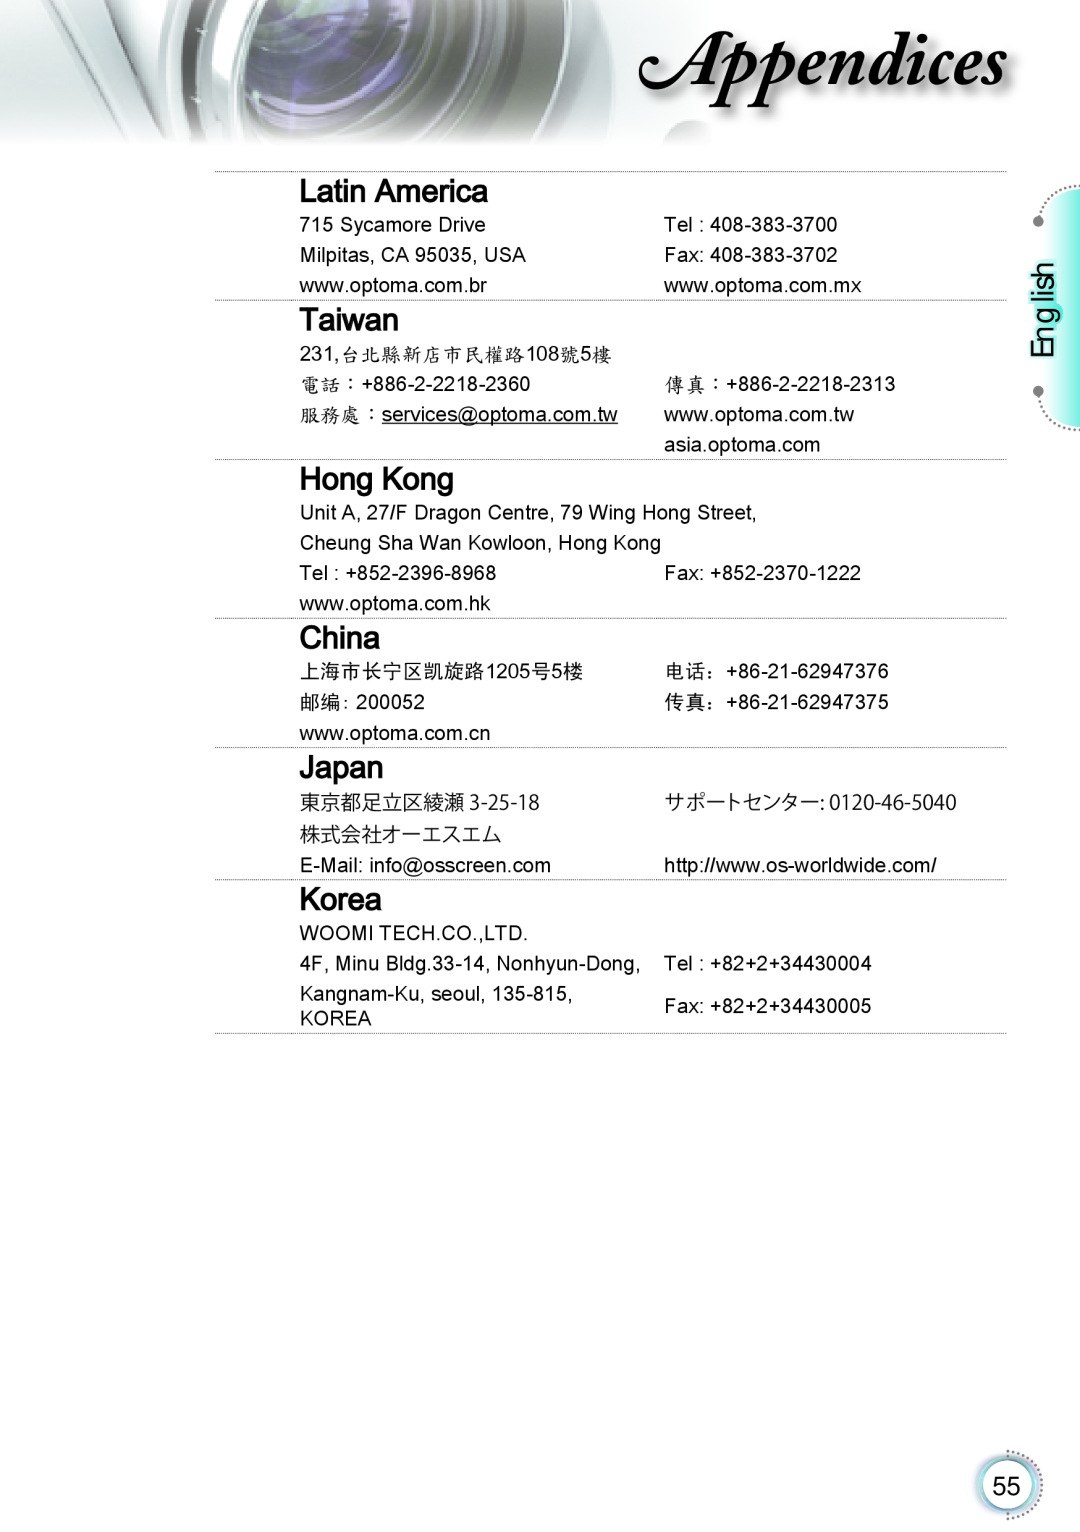 Optoma Technology TH1060P manual Latin America, Taiwan, Hong Kong, China, Japan, Korea, Appendices, English 